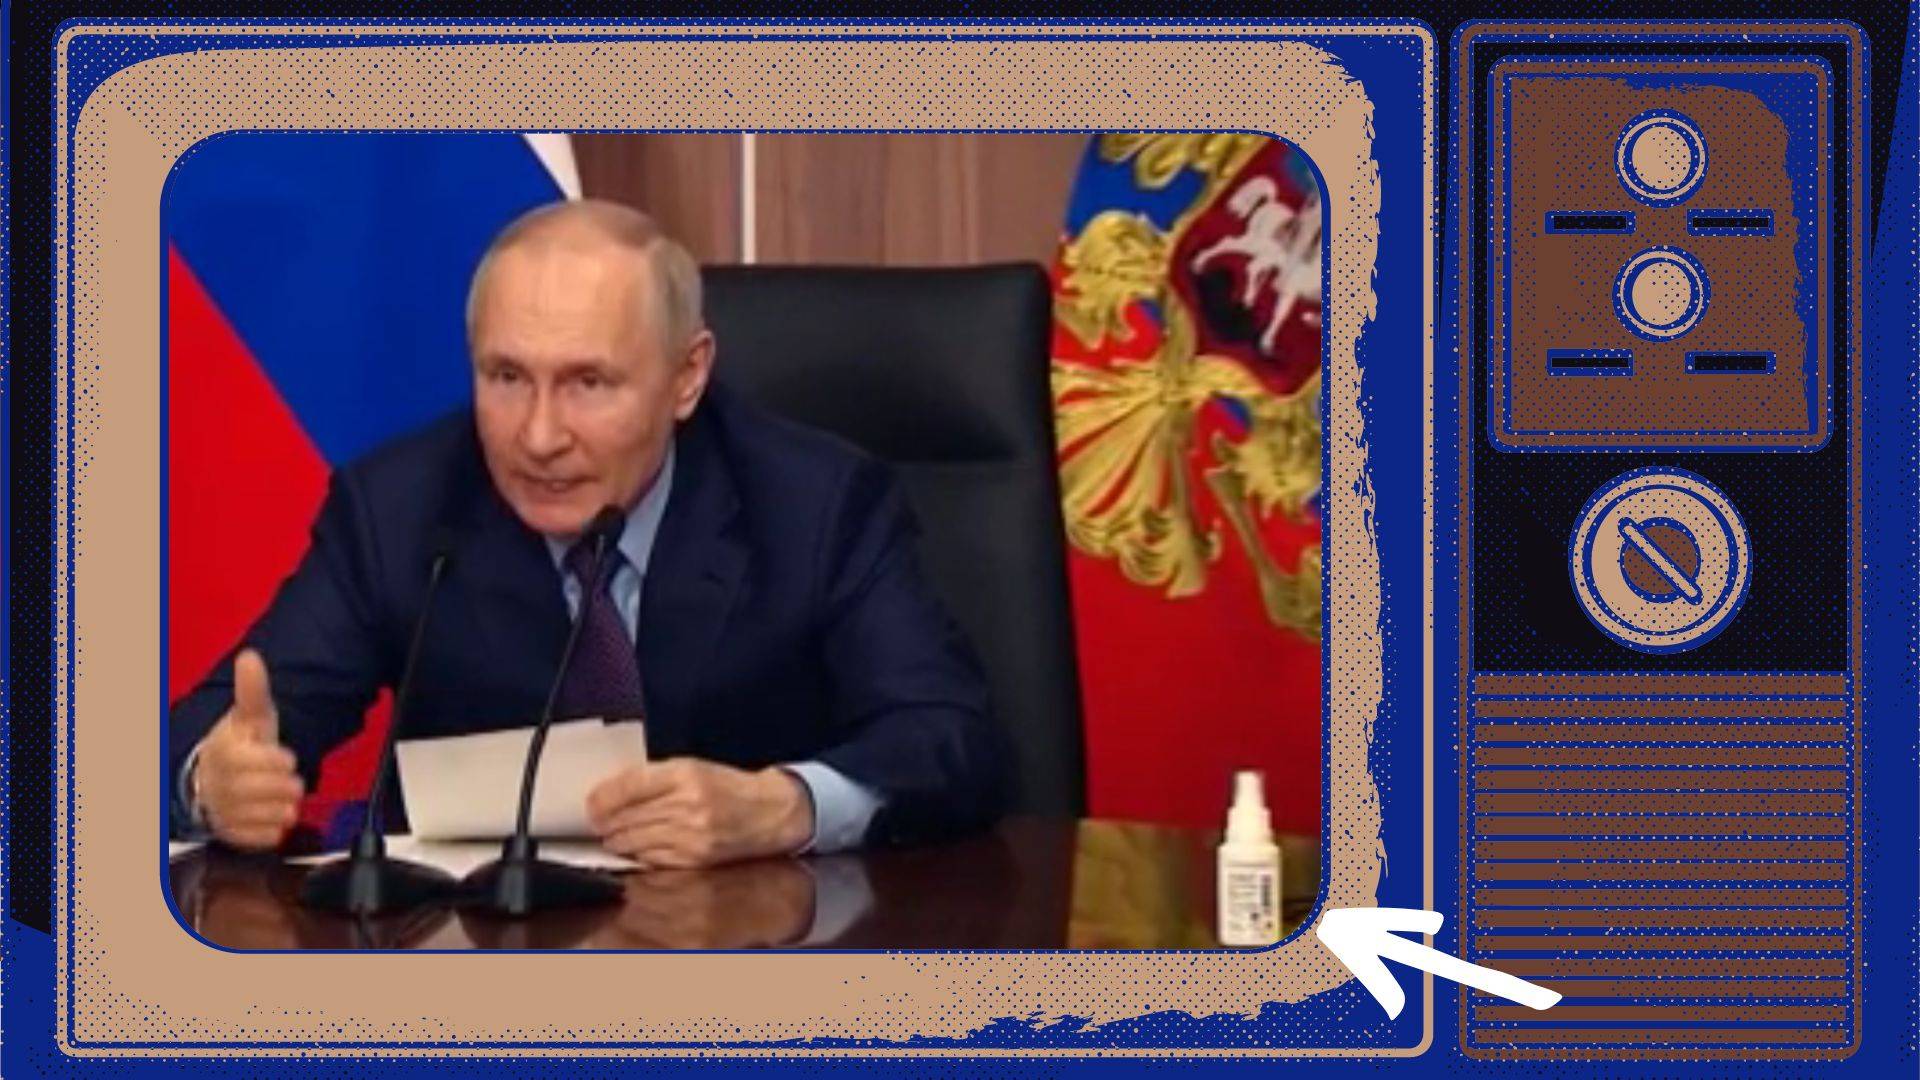 Grafika: Staro wyglądający Putin siedzi przy stole, obok - buteleczka z jakąś substancją (zaznaczona strzałką). Wszystko wklejone w ramy starego telewizora